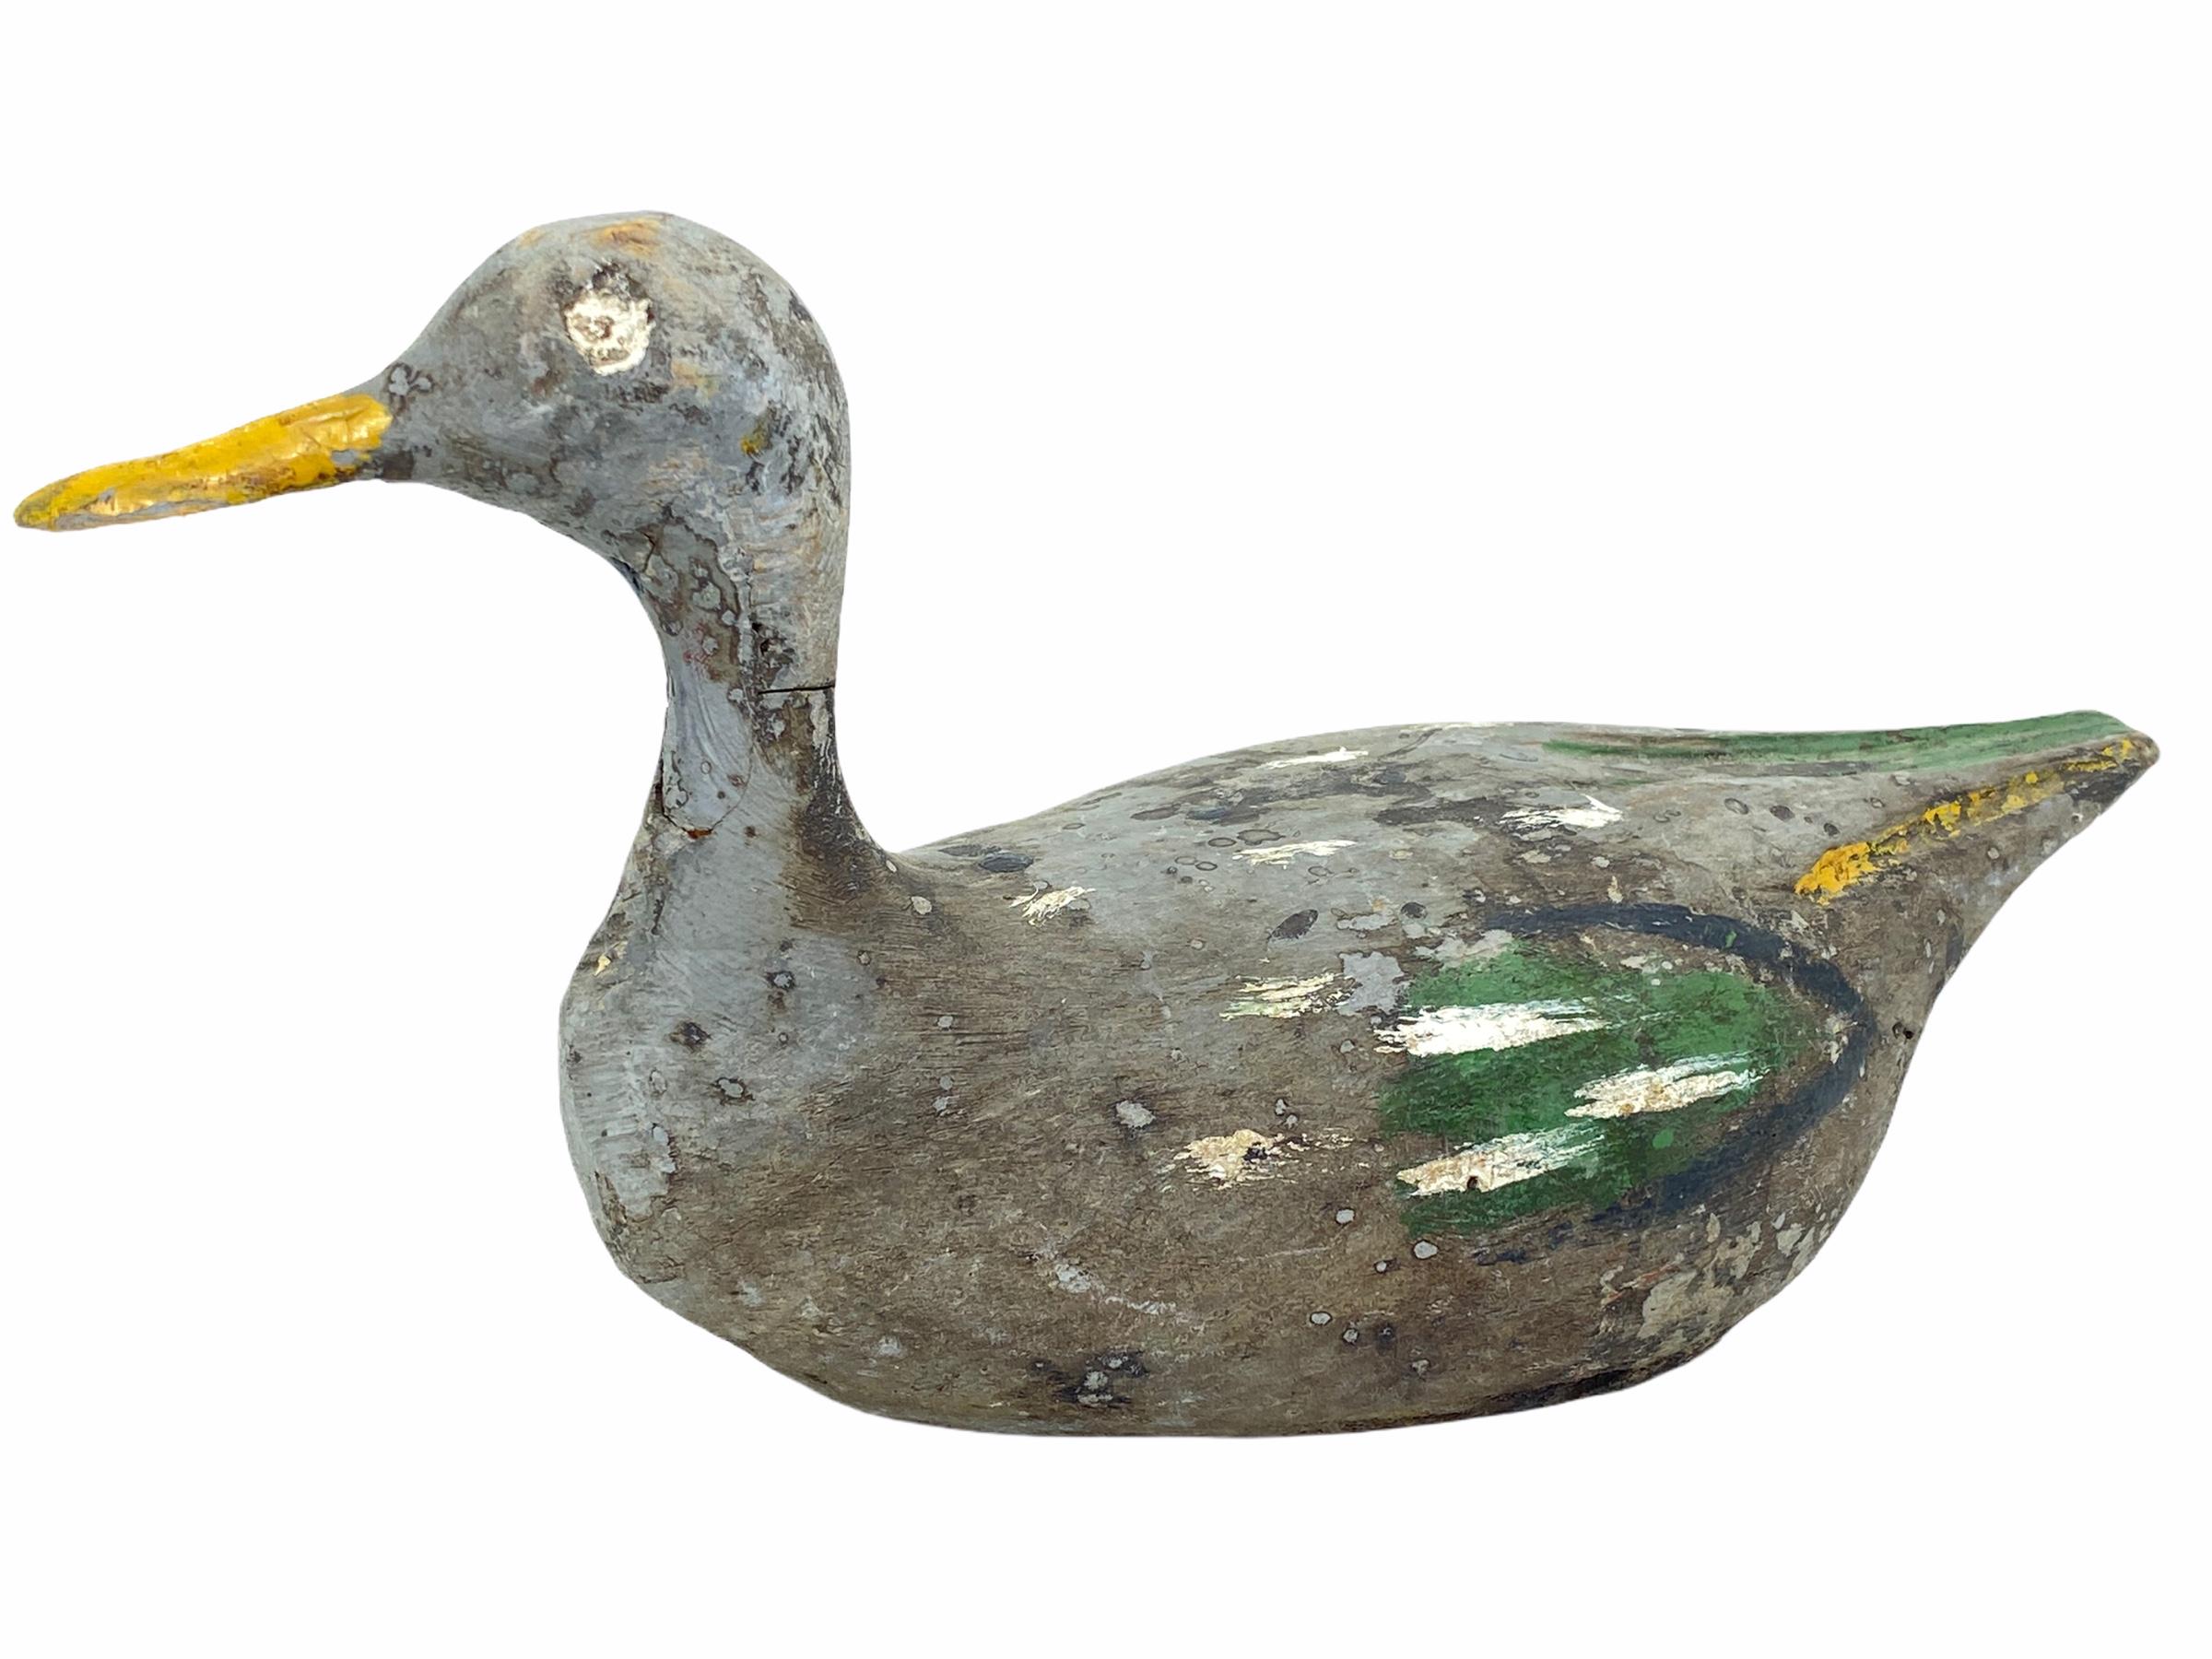 Diese handgeschnitzte und handbemalte Entenattrappe wurde in Deutschland bei einem Nachlassverkauf gefunden und ist perfekt für den Sammler. Die Farbe wurde von einem früheren Jäger gut genutzt und ist im Laufe der Zeit verblasst, obwohl die